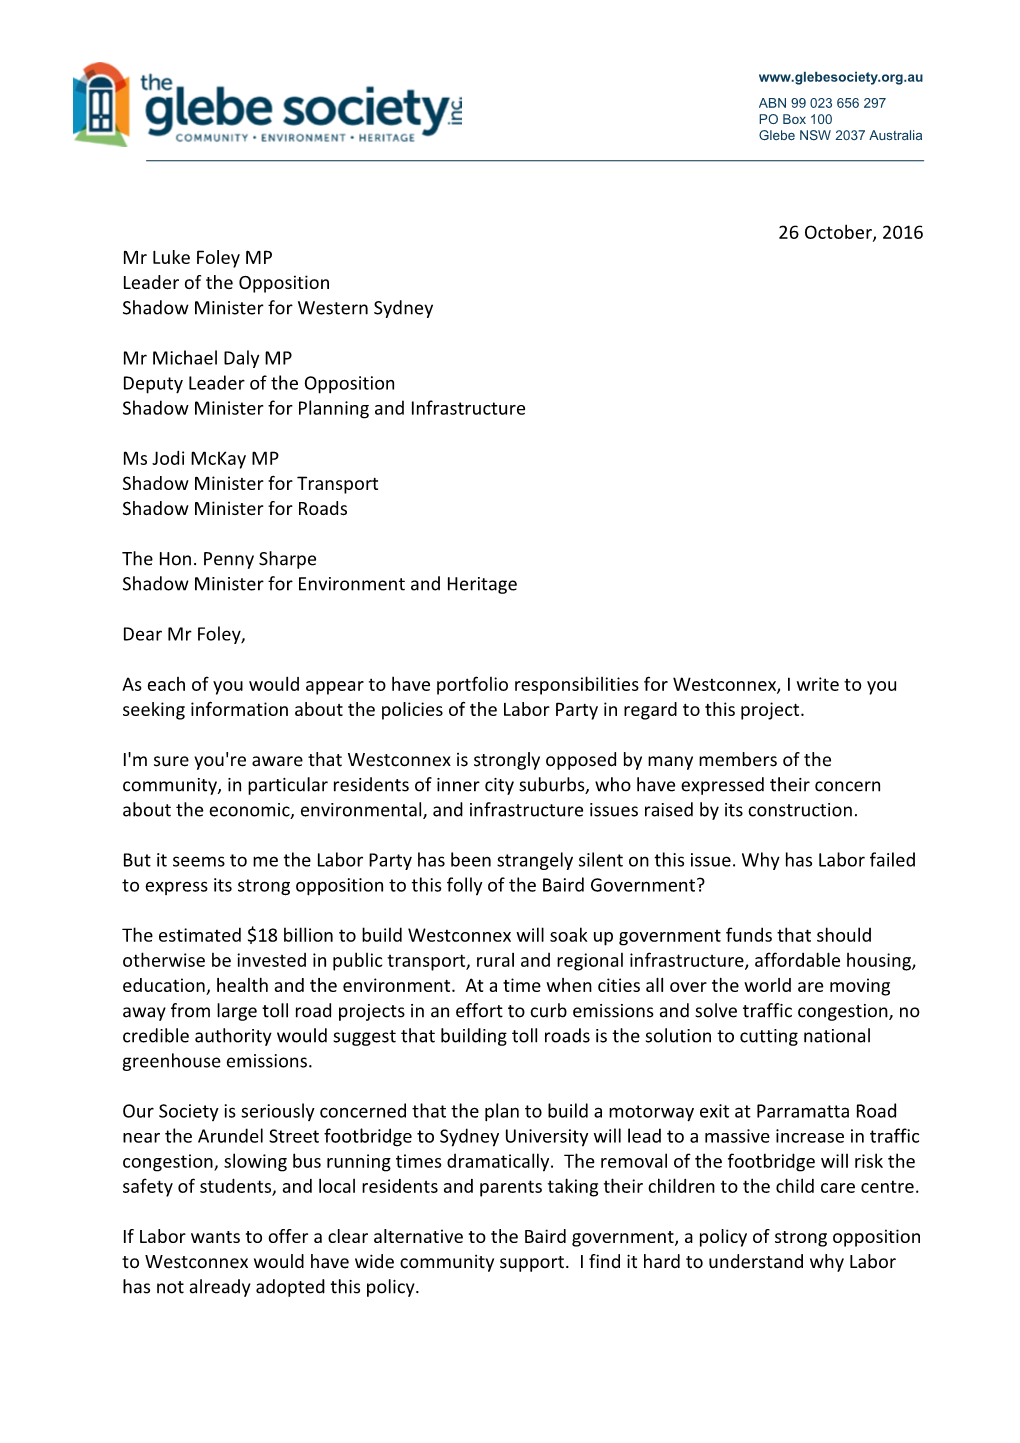 President's Letter to Luke Foley Re Westconnex